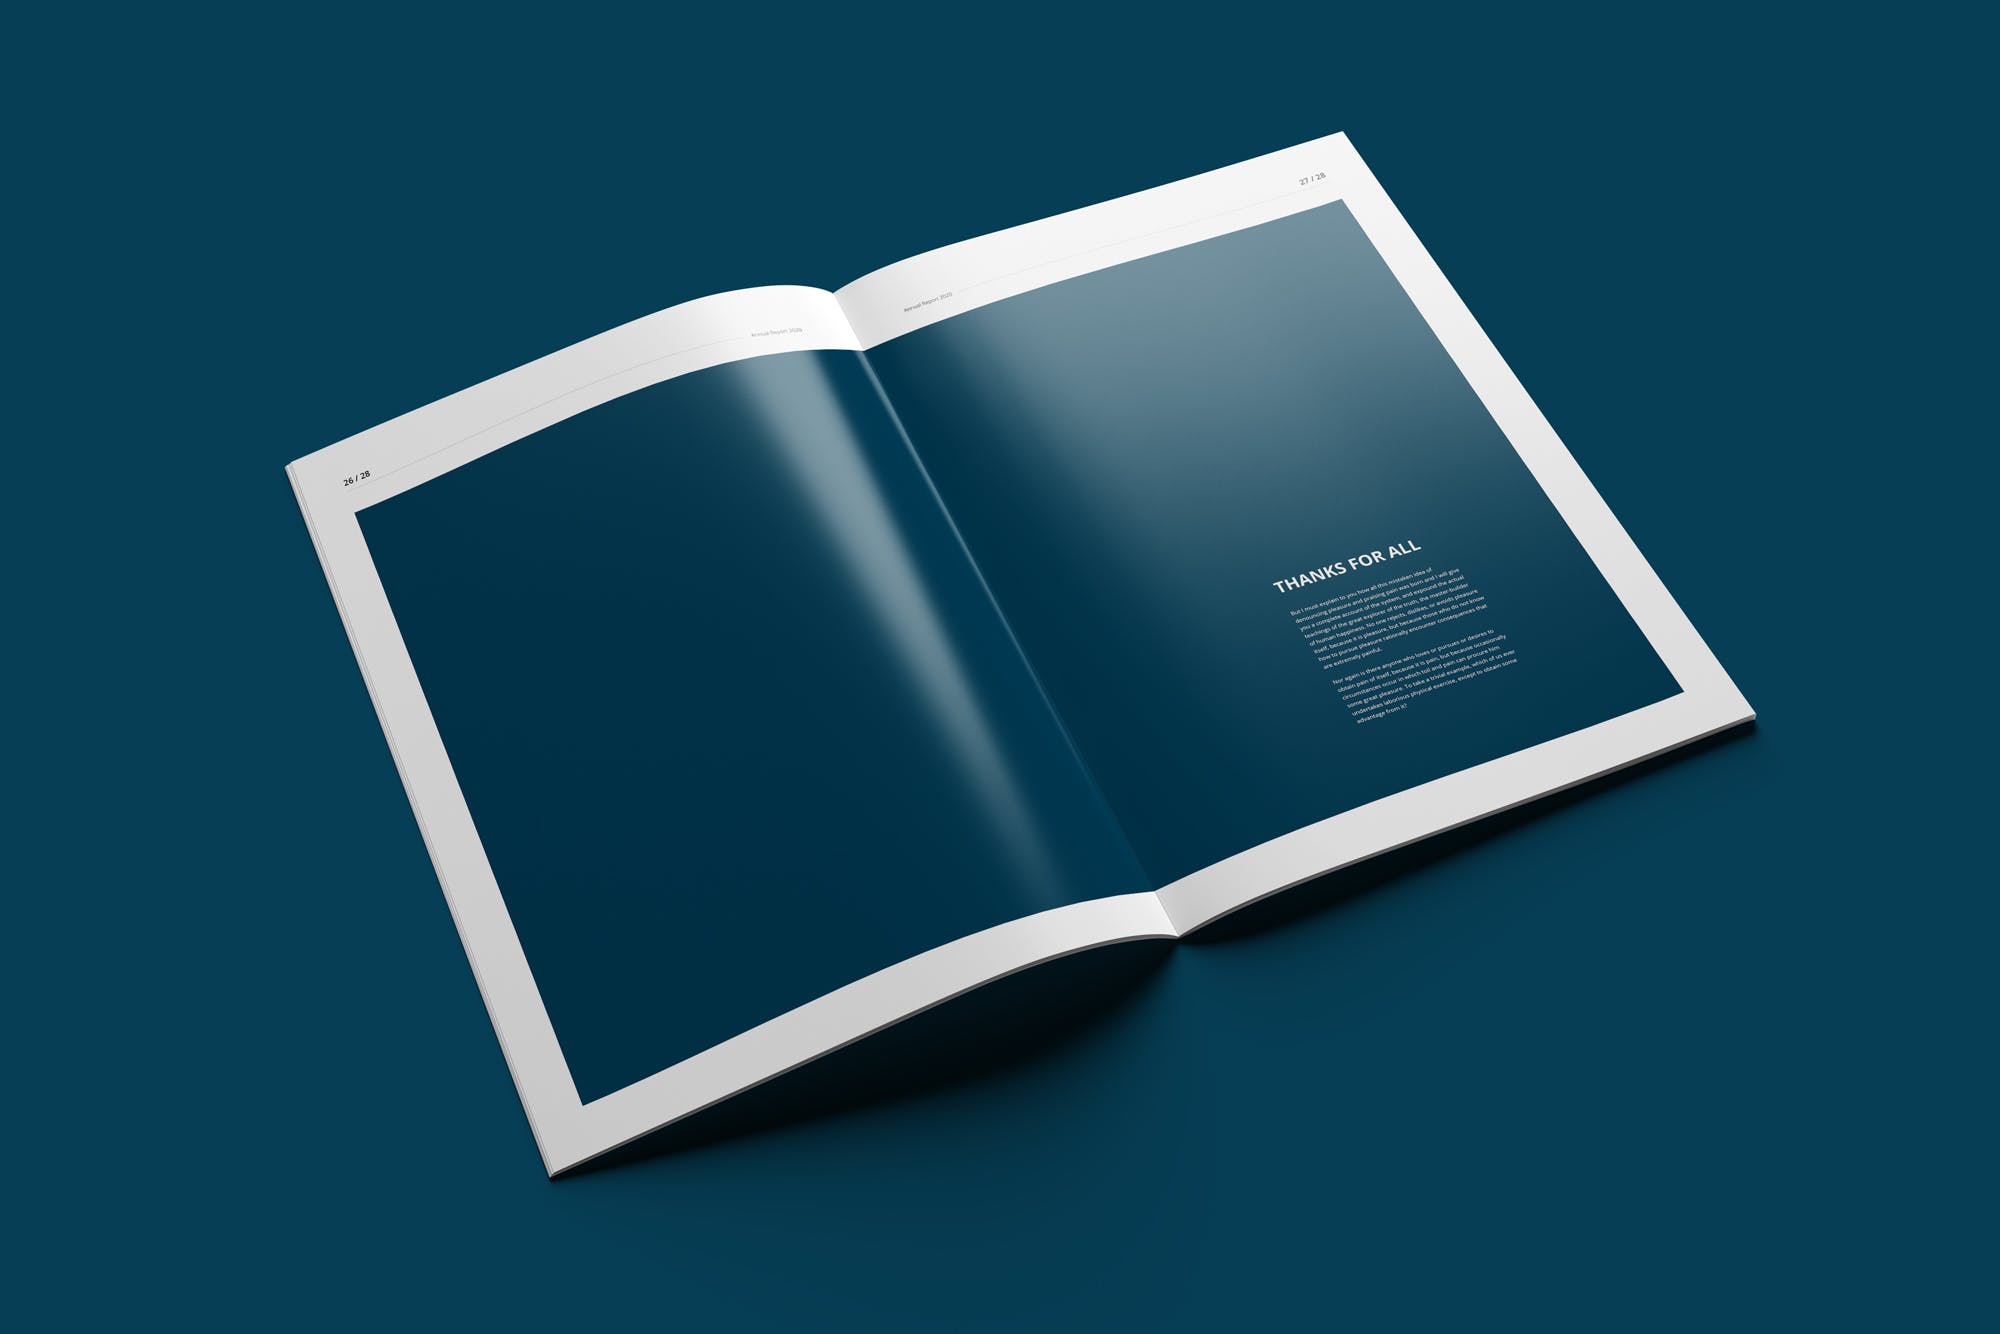 2020年企业年终总结报告设计INDD模板 Annual Report 2020 | 28 Pages插图(12)